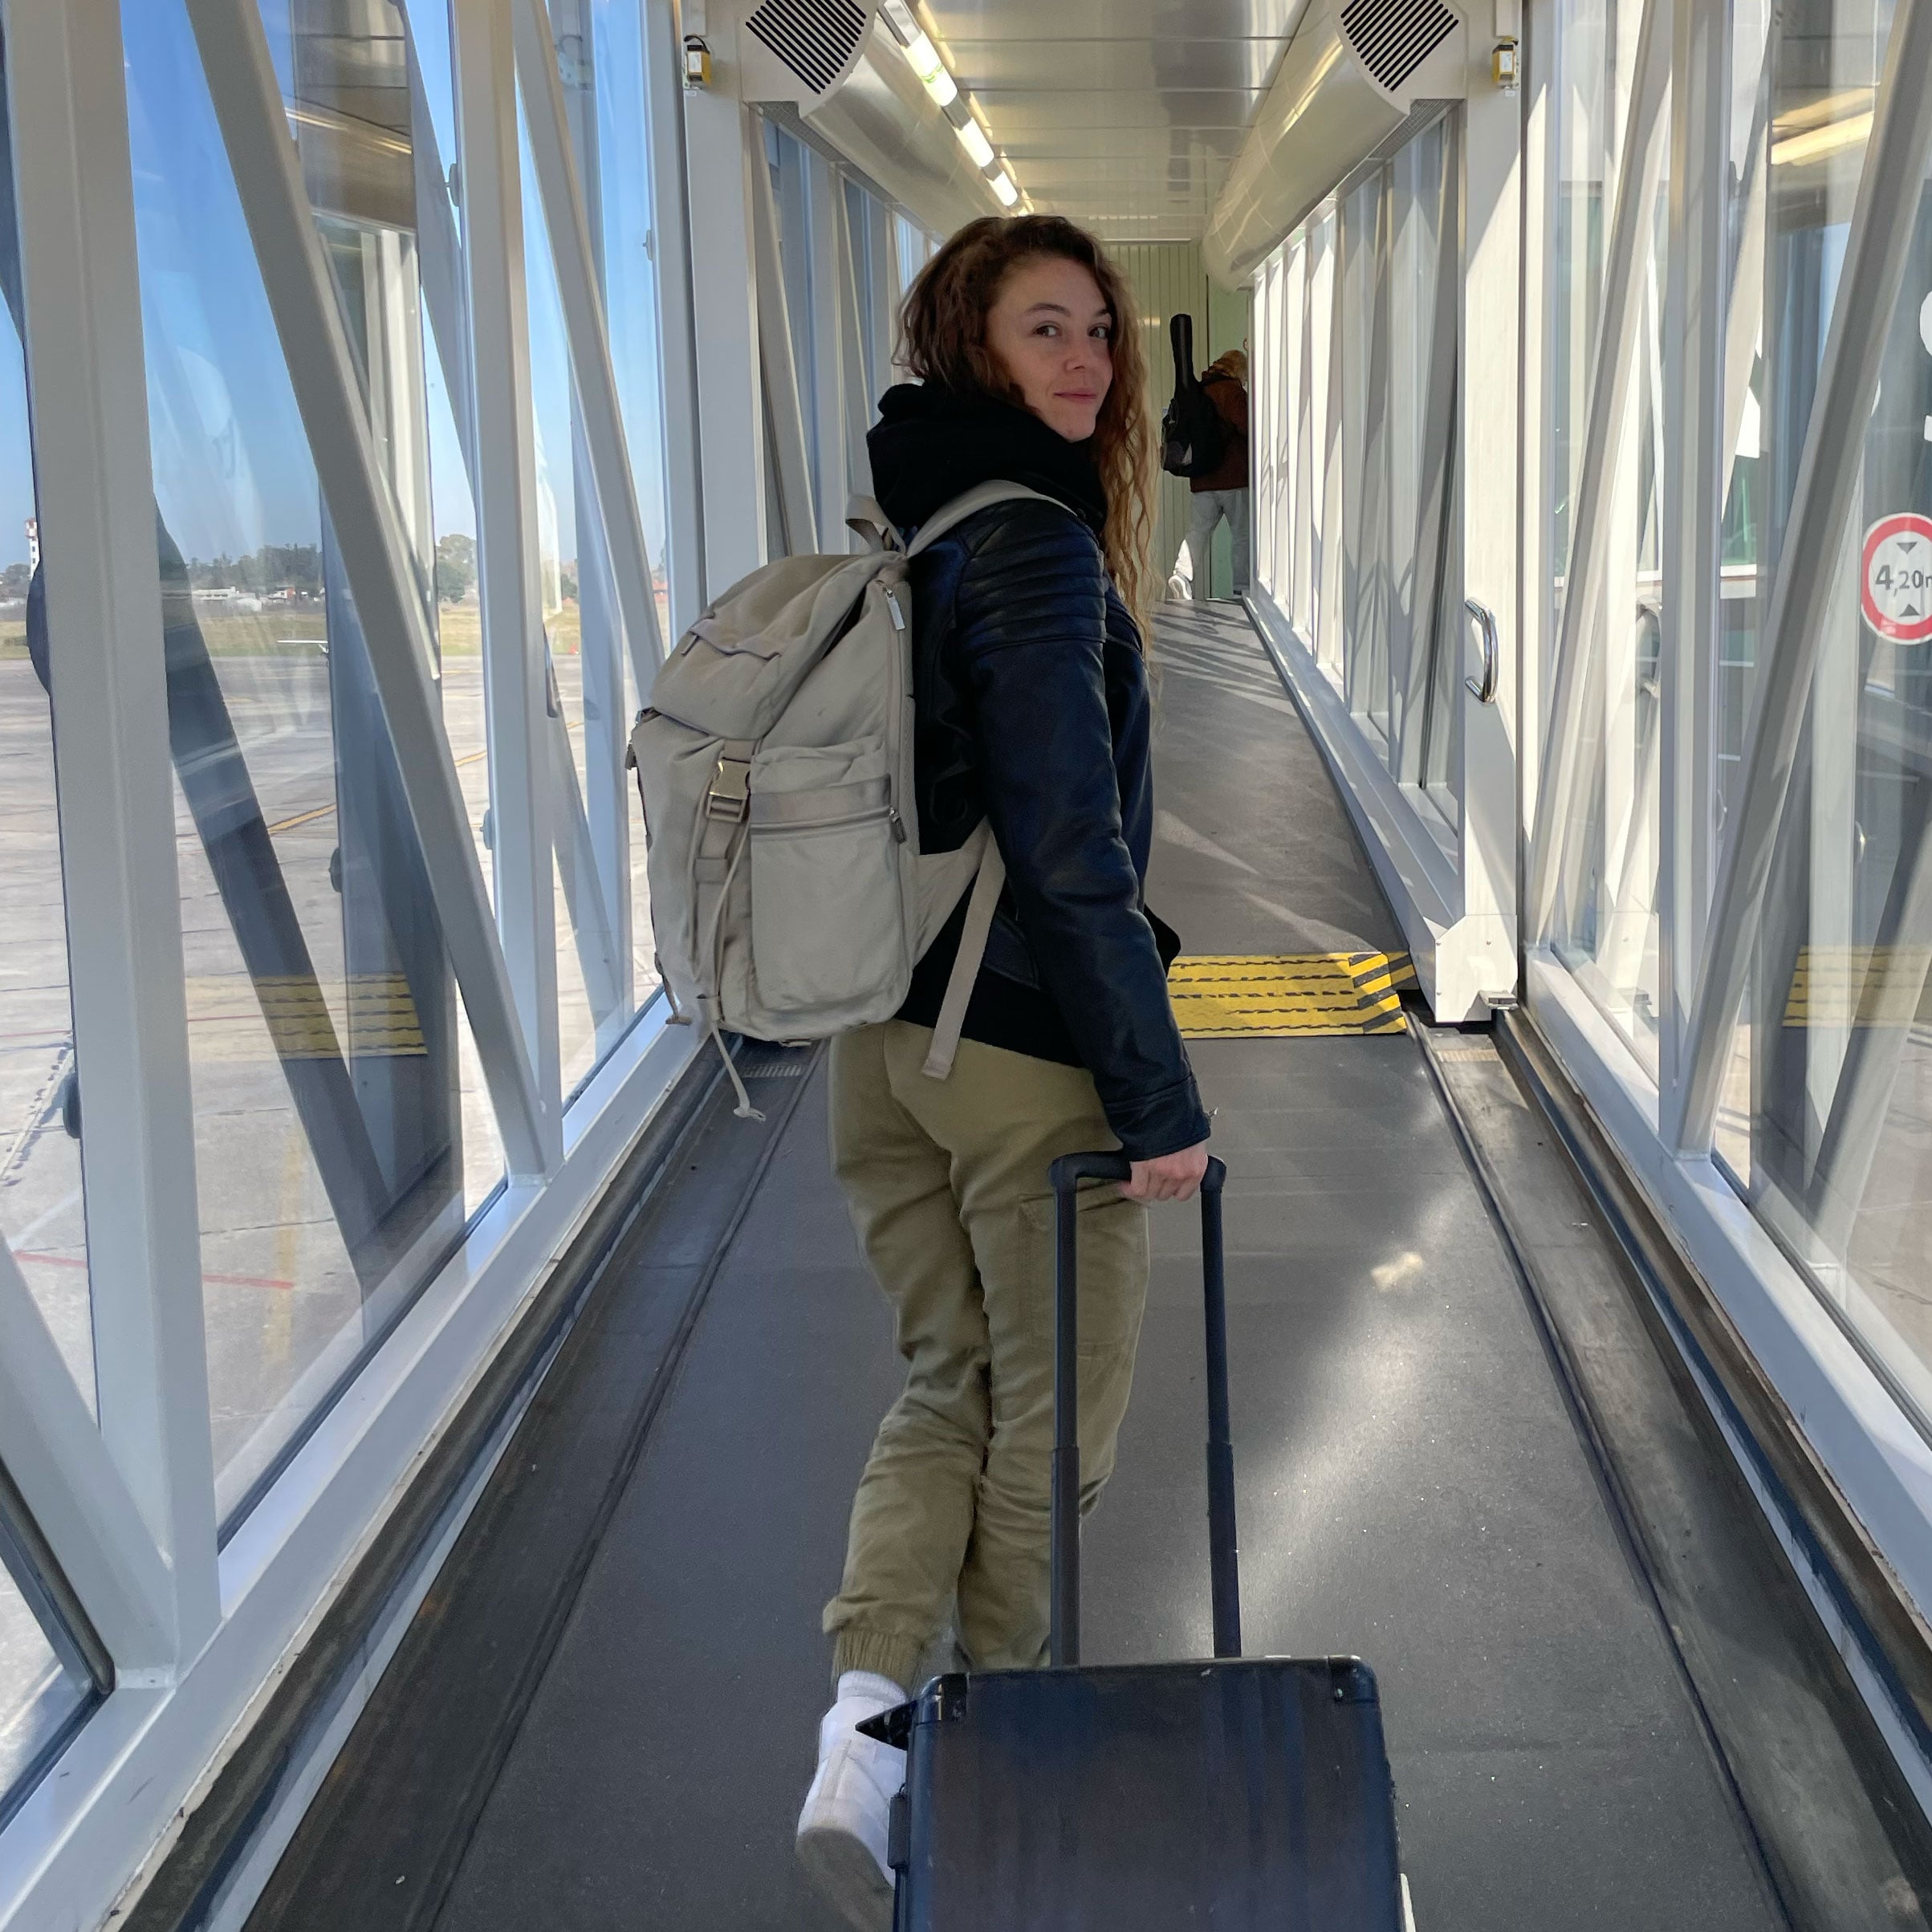 Storr 25L Travel Backpack – Carry-On Backpack